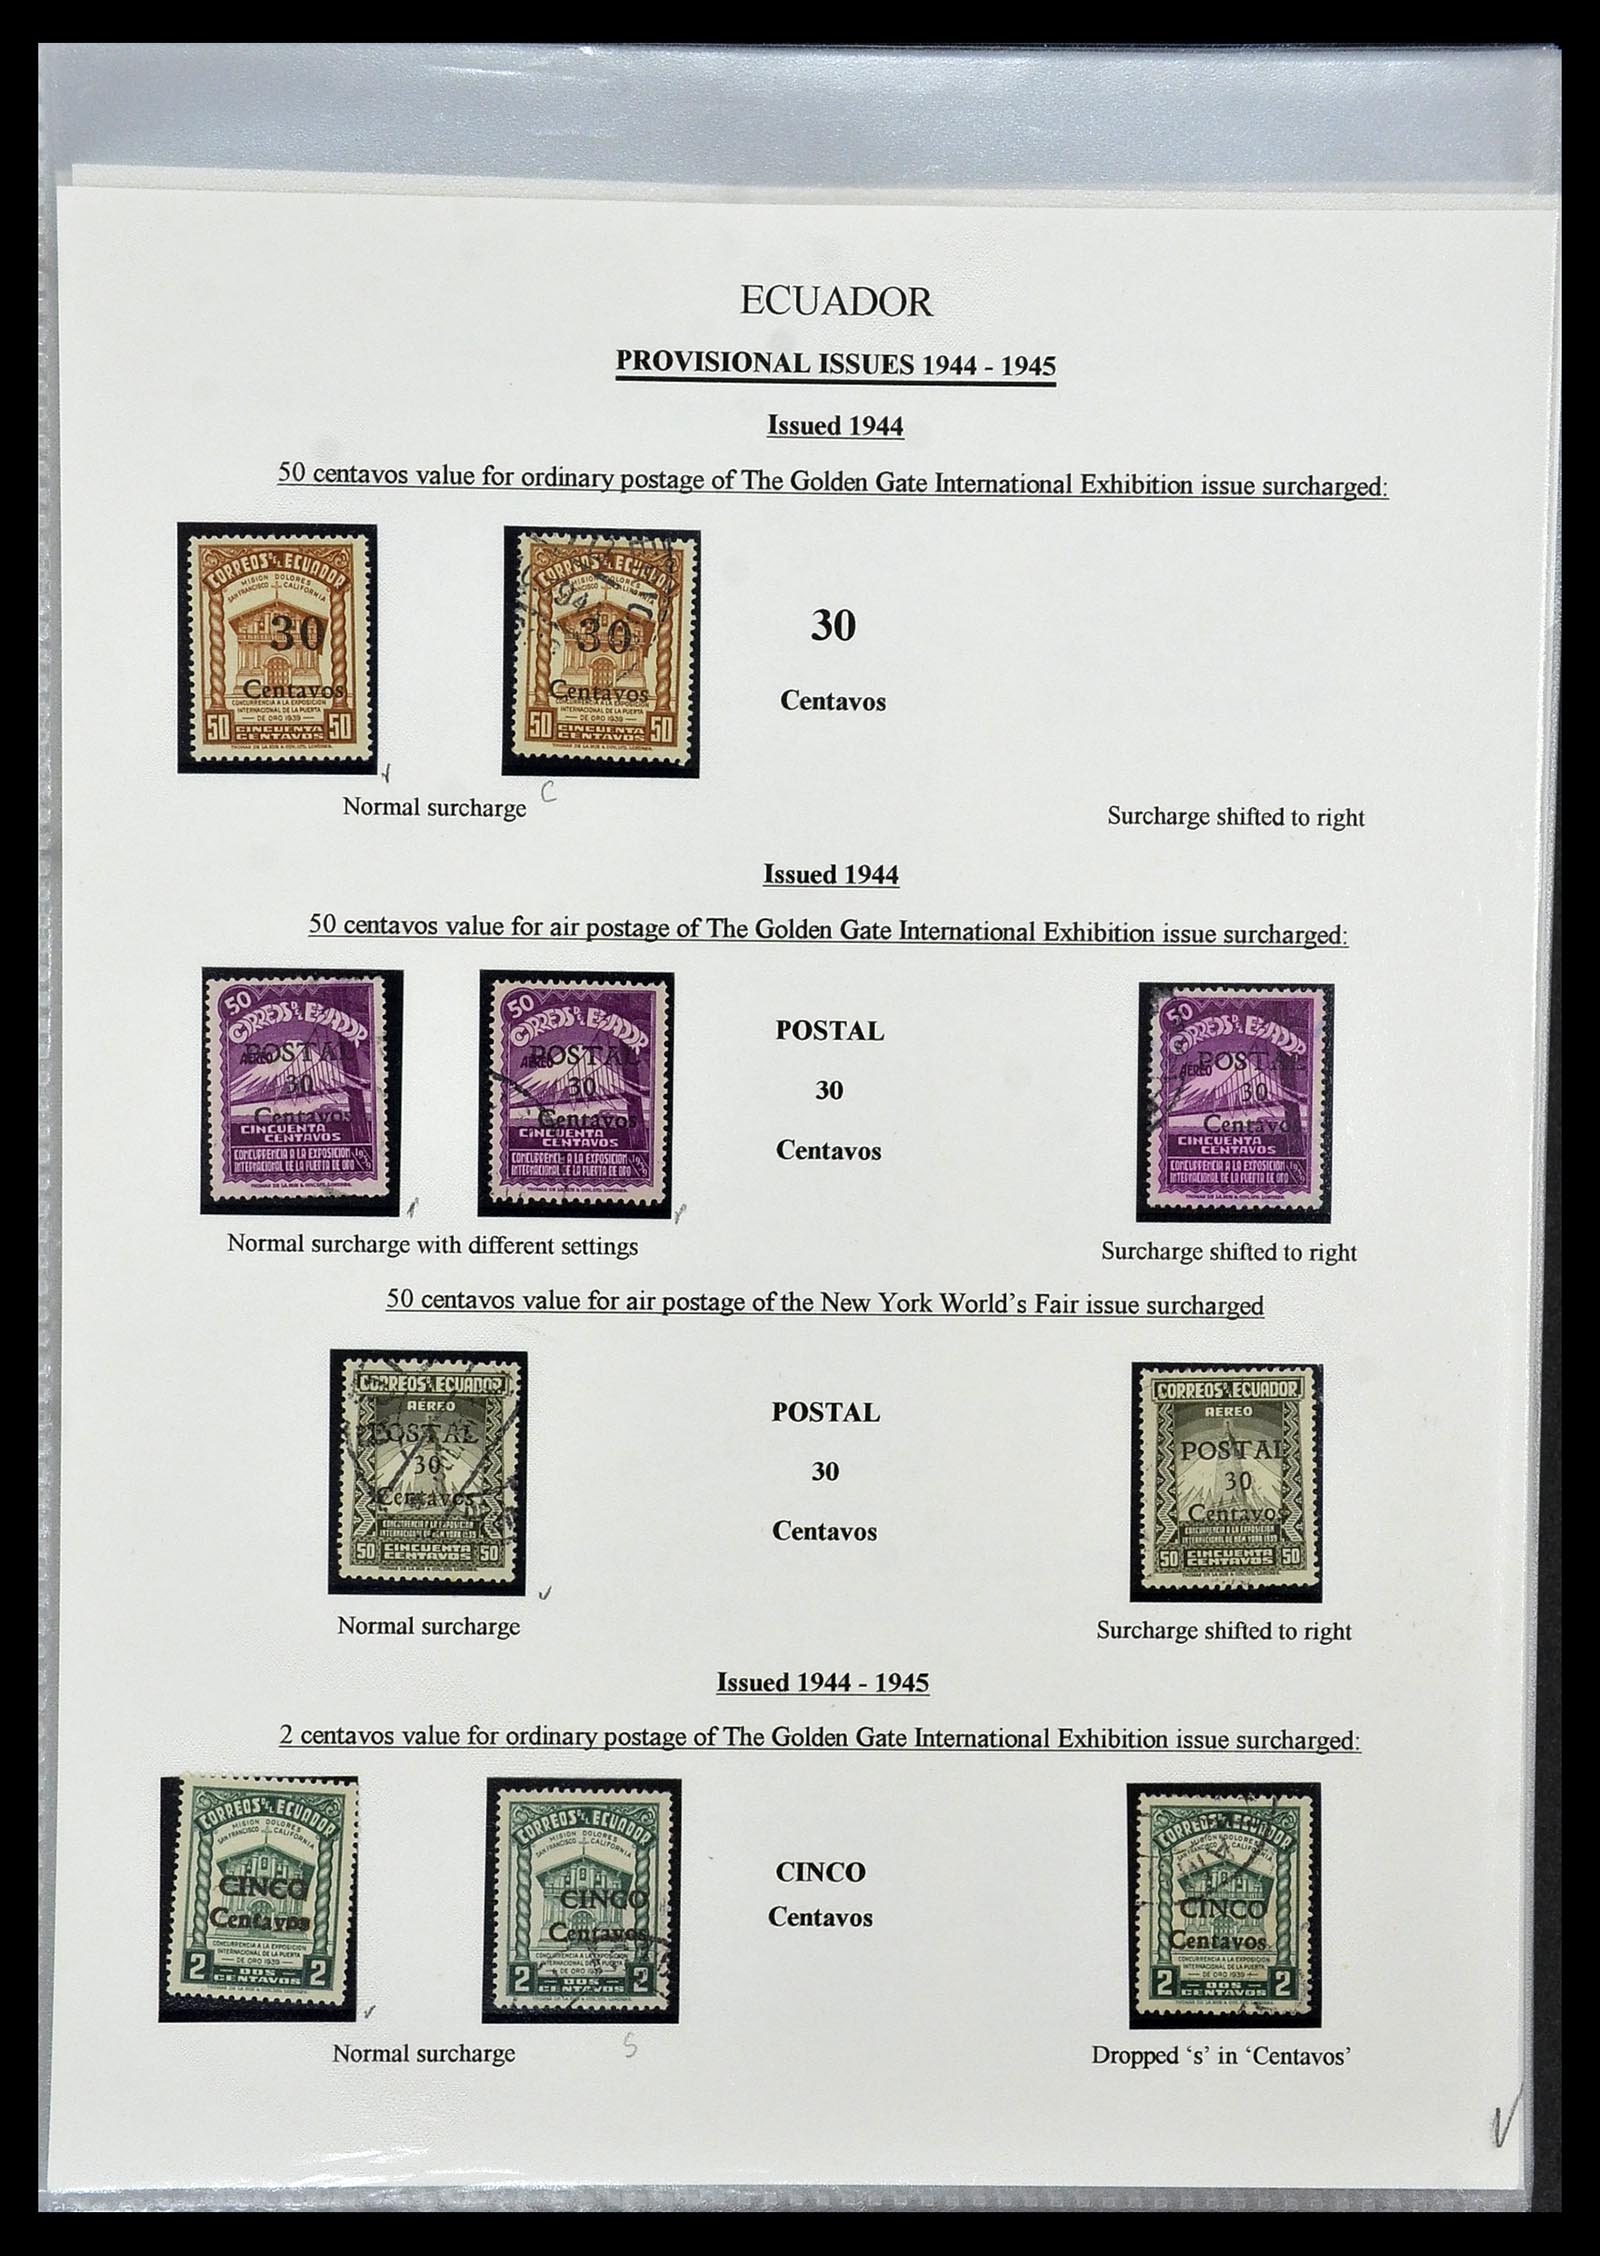 34523 079 - Stamp Collection 34523 Ecuador 1899-1952.